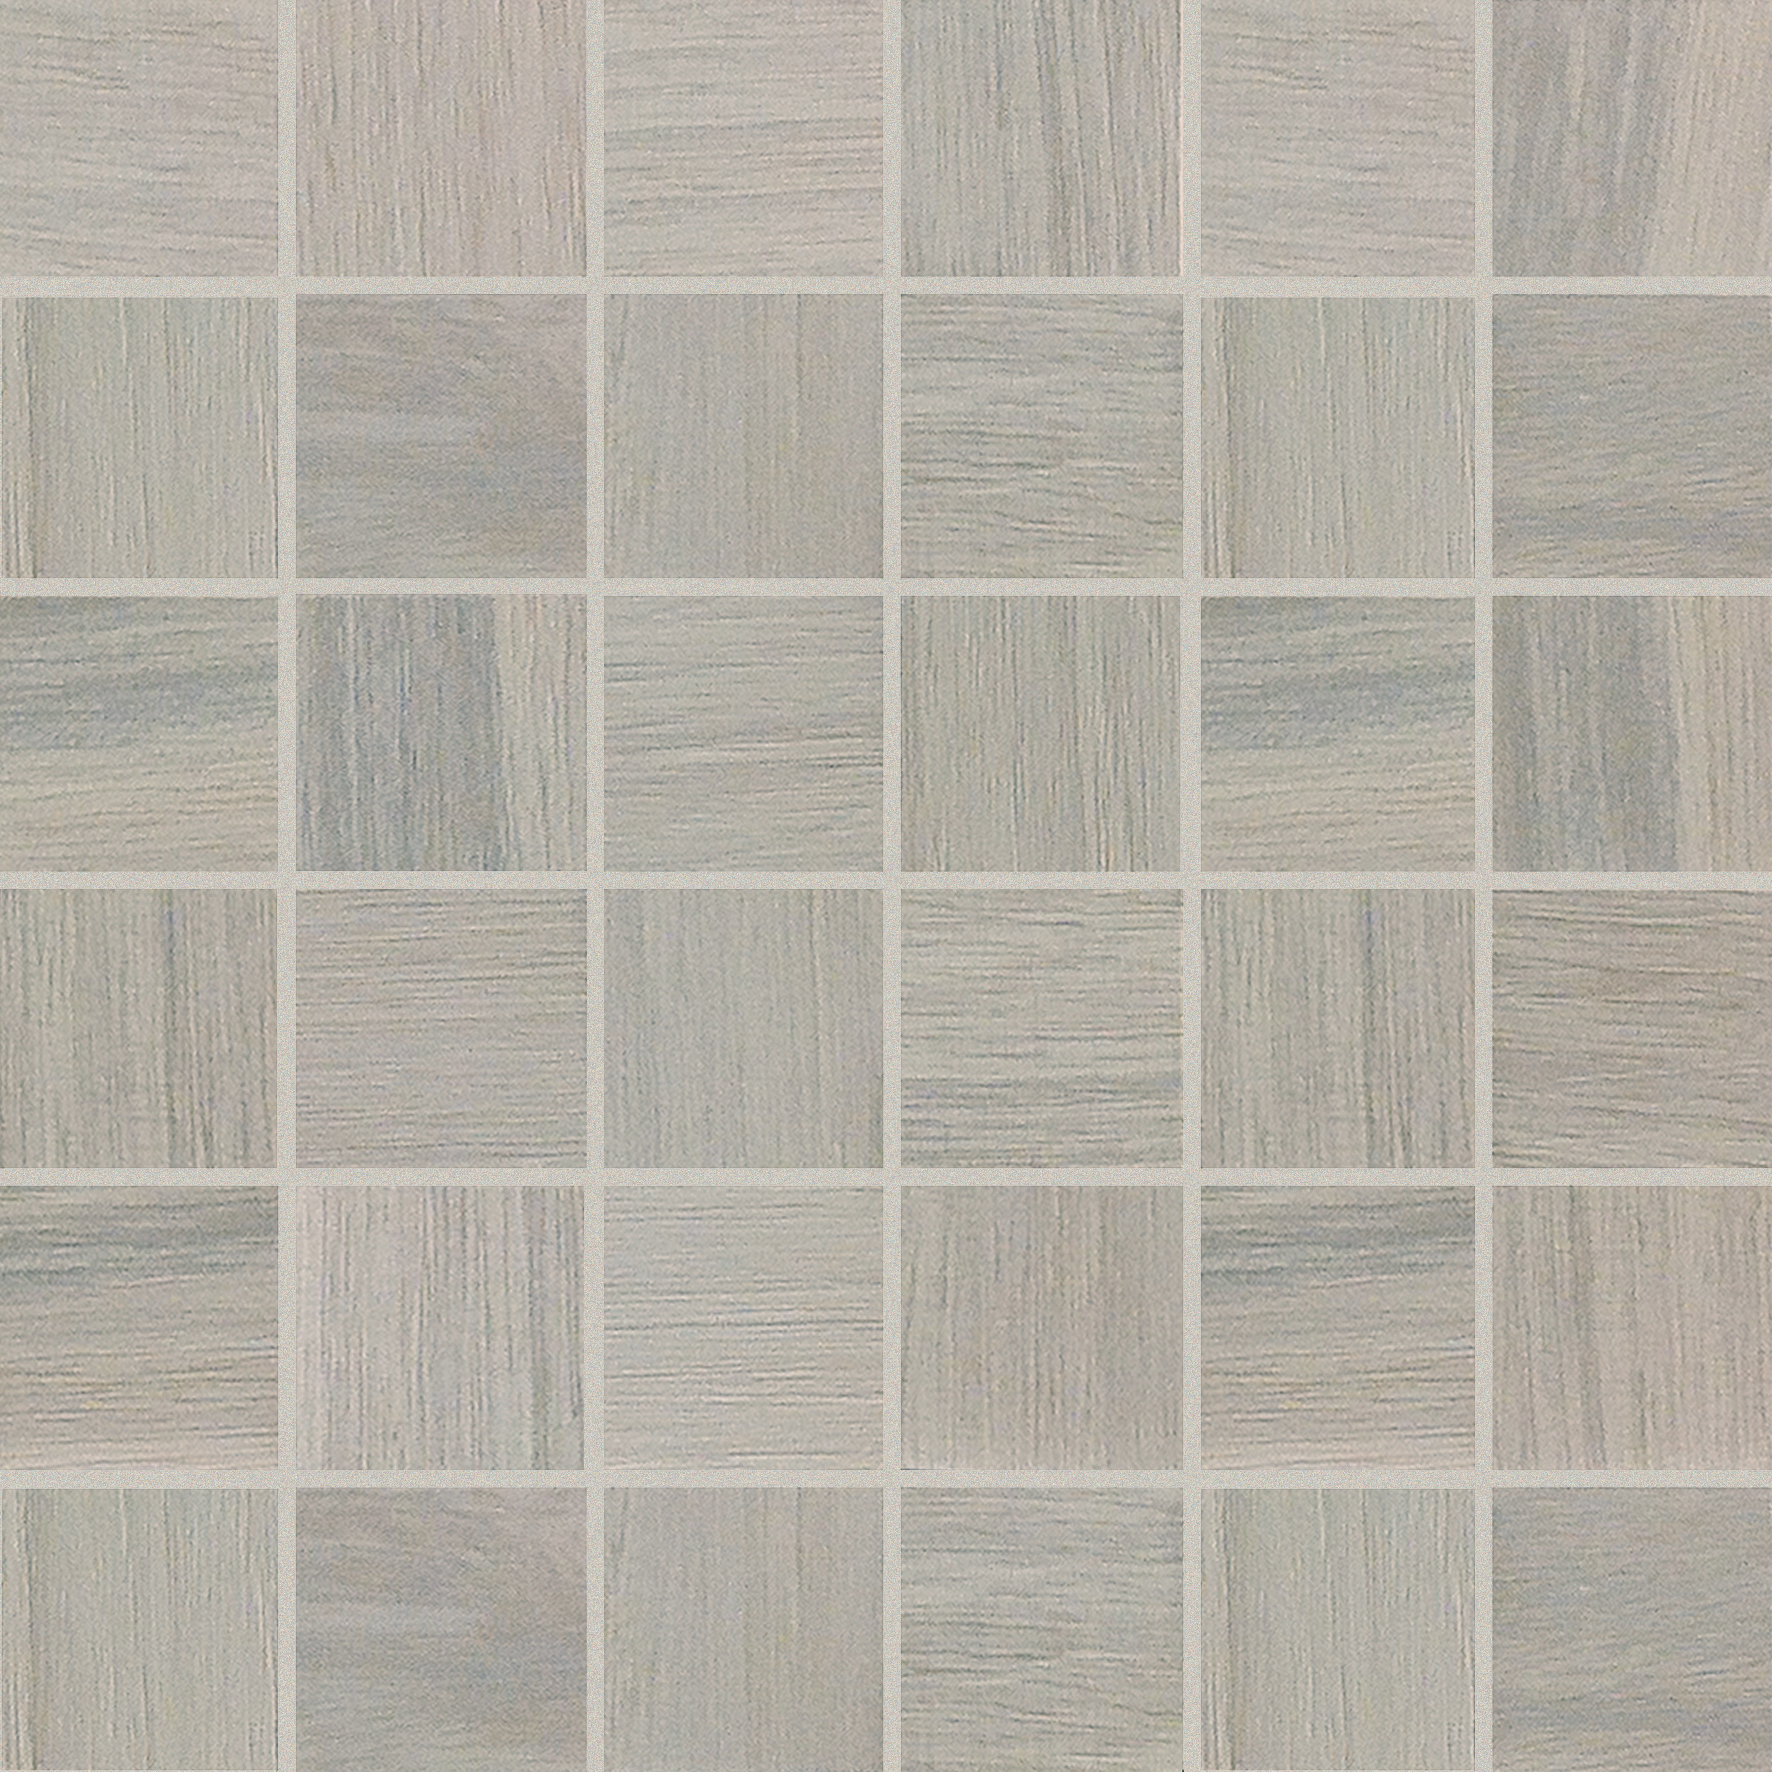 Bodenfliese,Wandfliese Florim Wooden Tile Of Casa Dolce Casa Gray Matt – Naturale Gray 741929 matt natur 30x30cm Mosaik Sfalsato 5x5 9mm